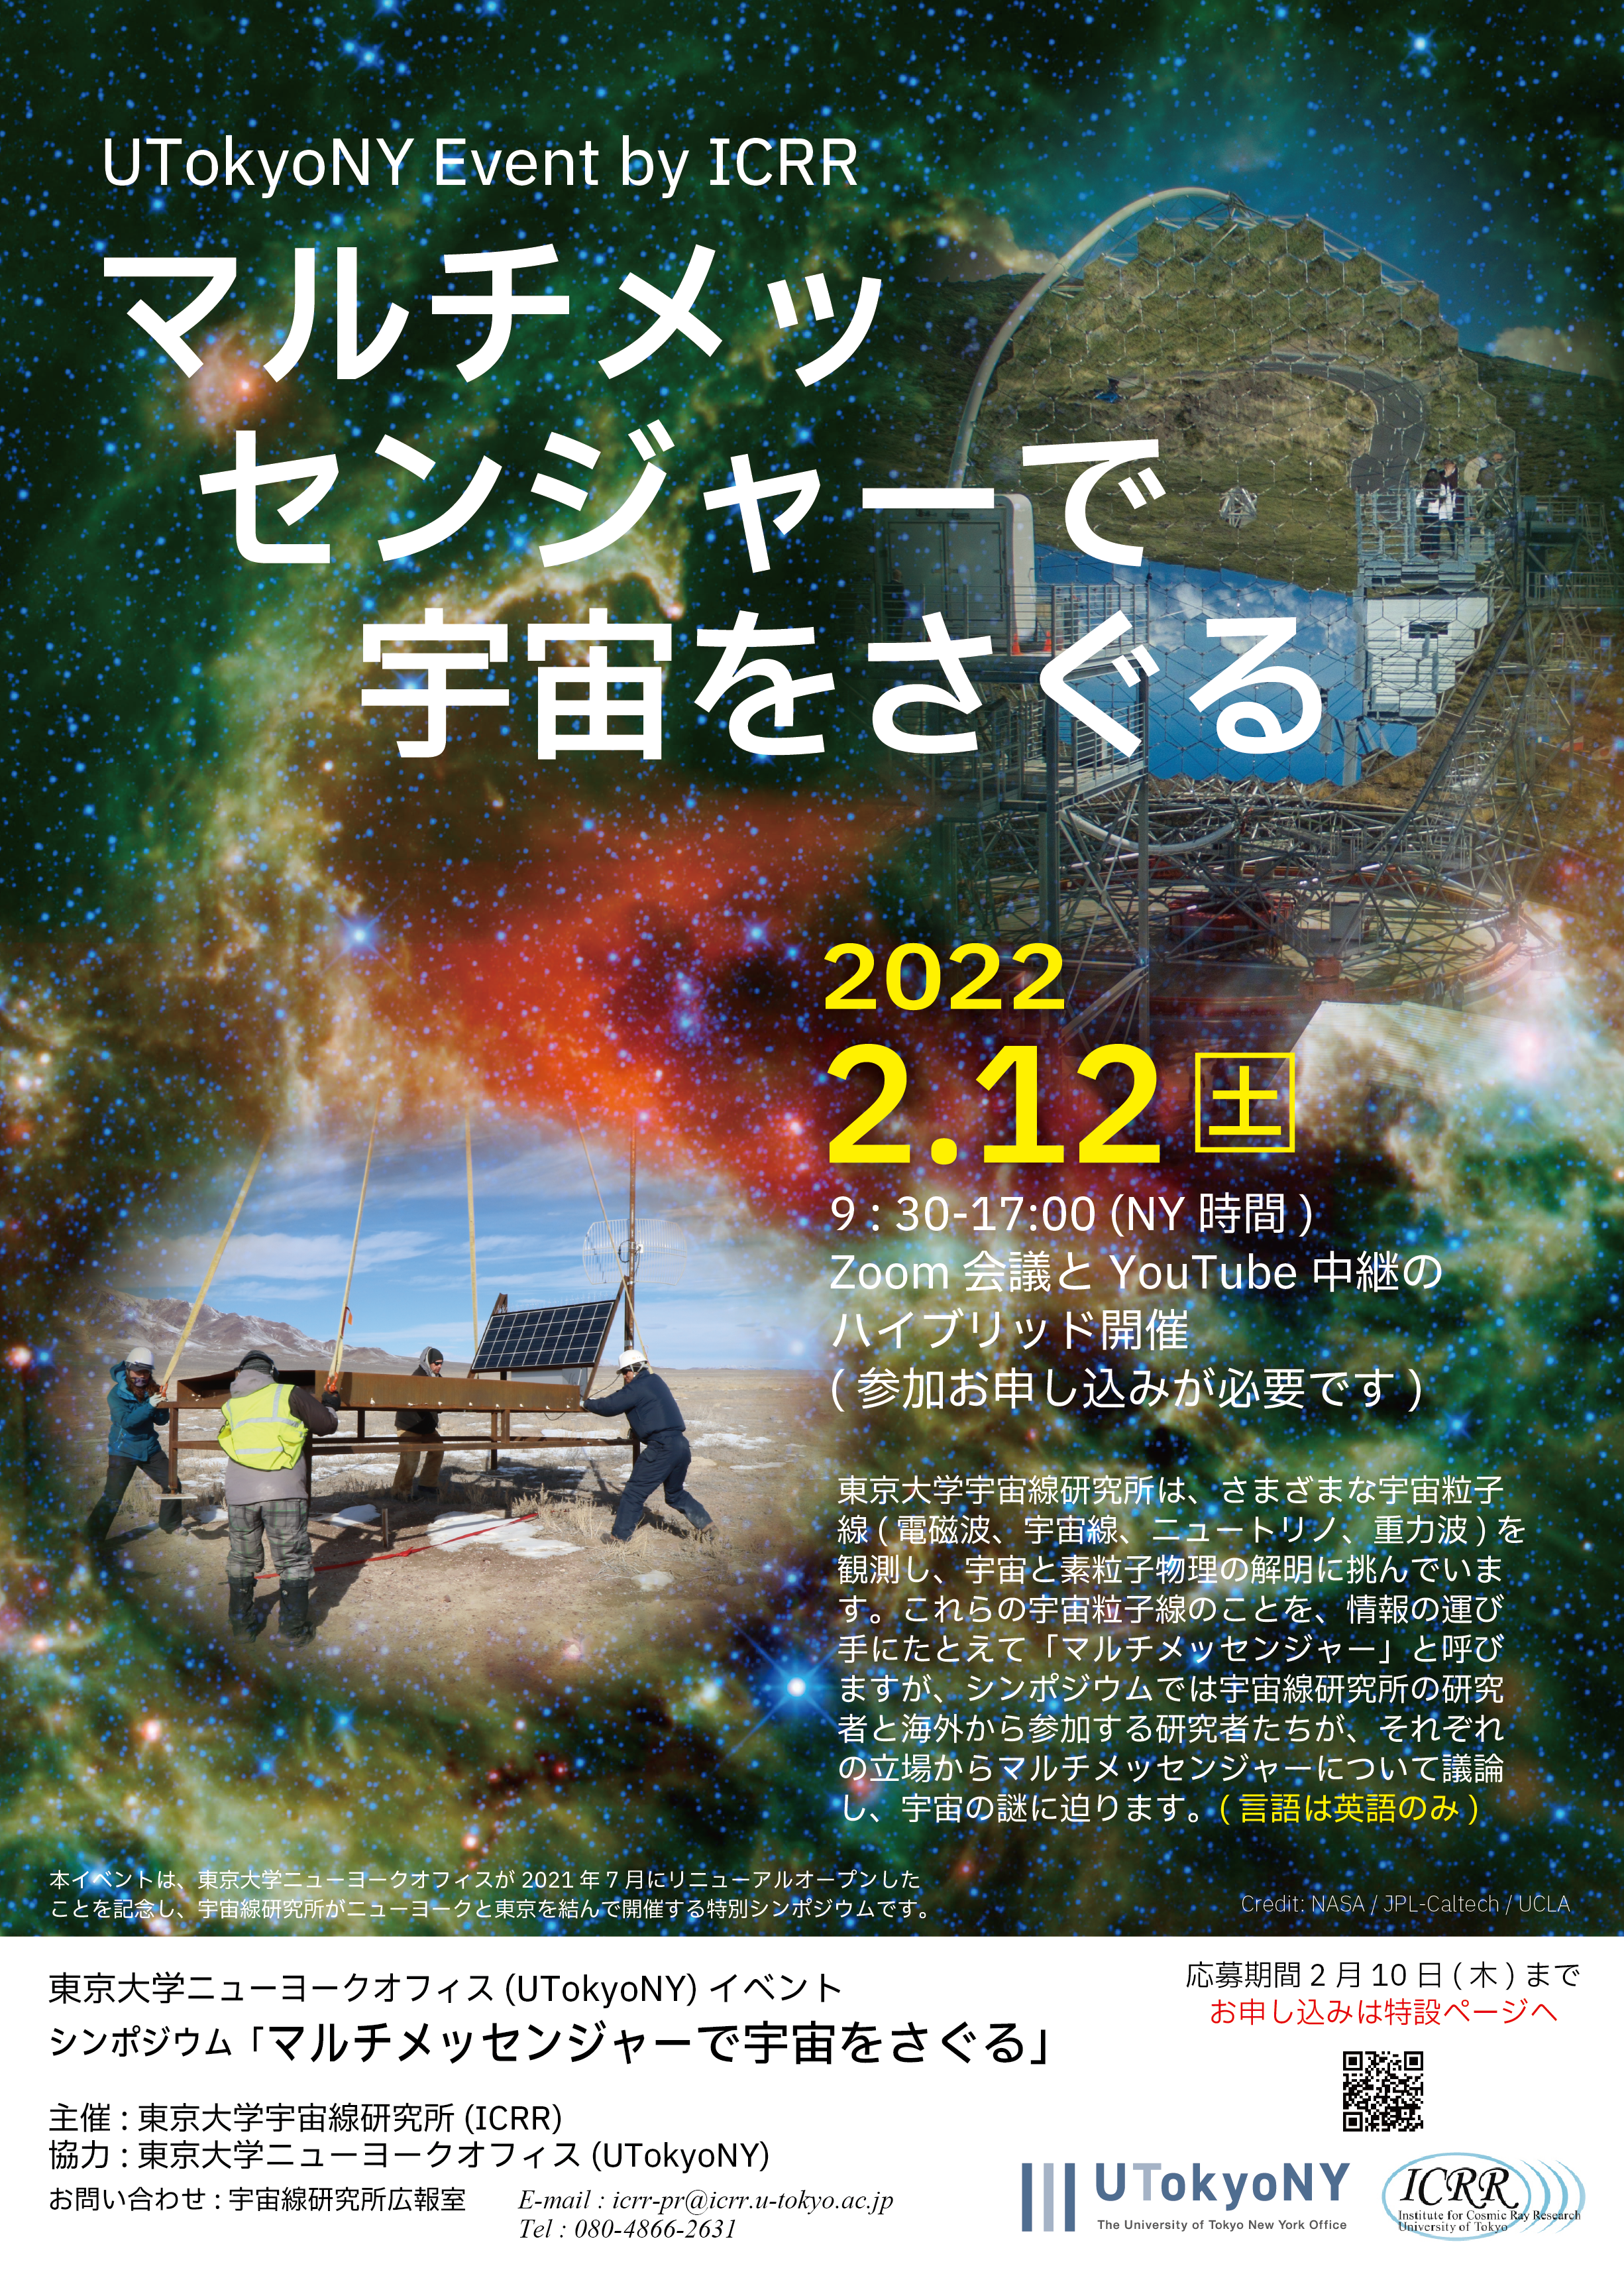 【2月12日開催】シンポジウム 「マルチメッセンジャーで宇宙をさぐる」